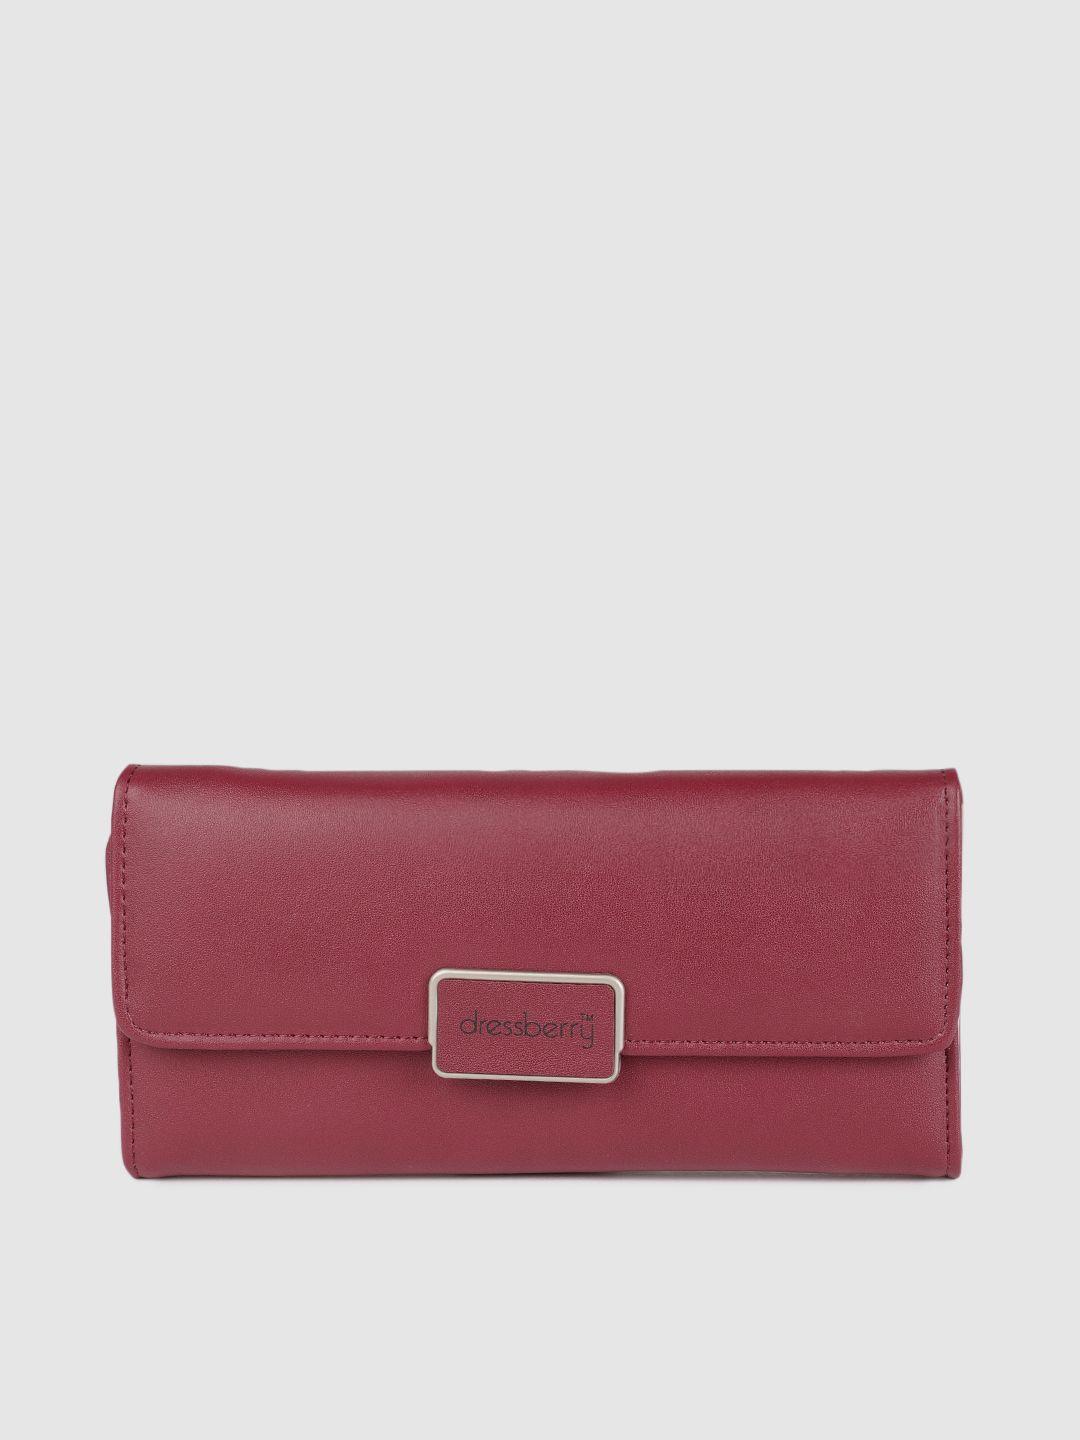 dressberry women burgundy solid two fold wallet